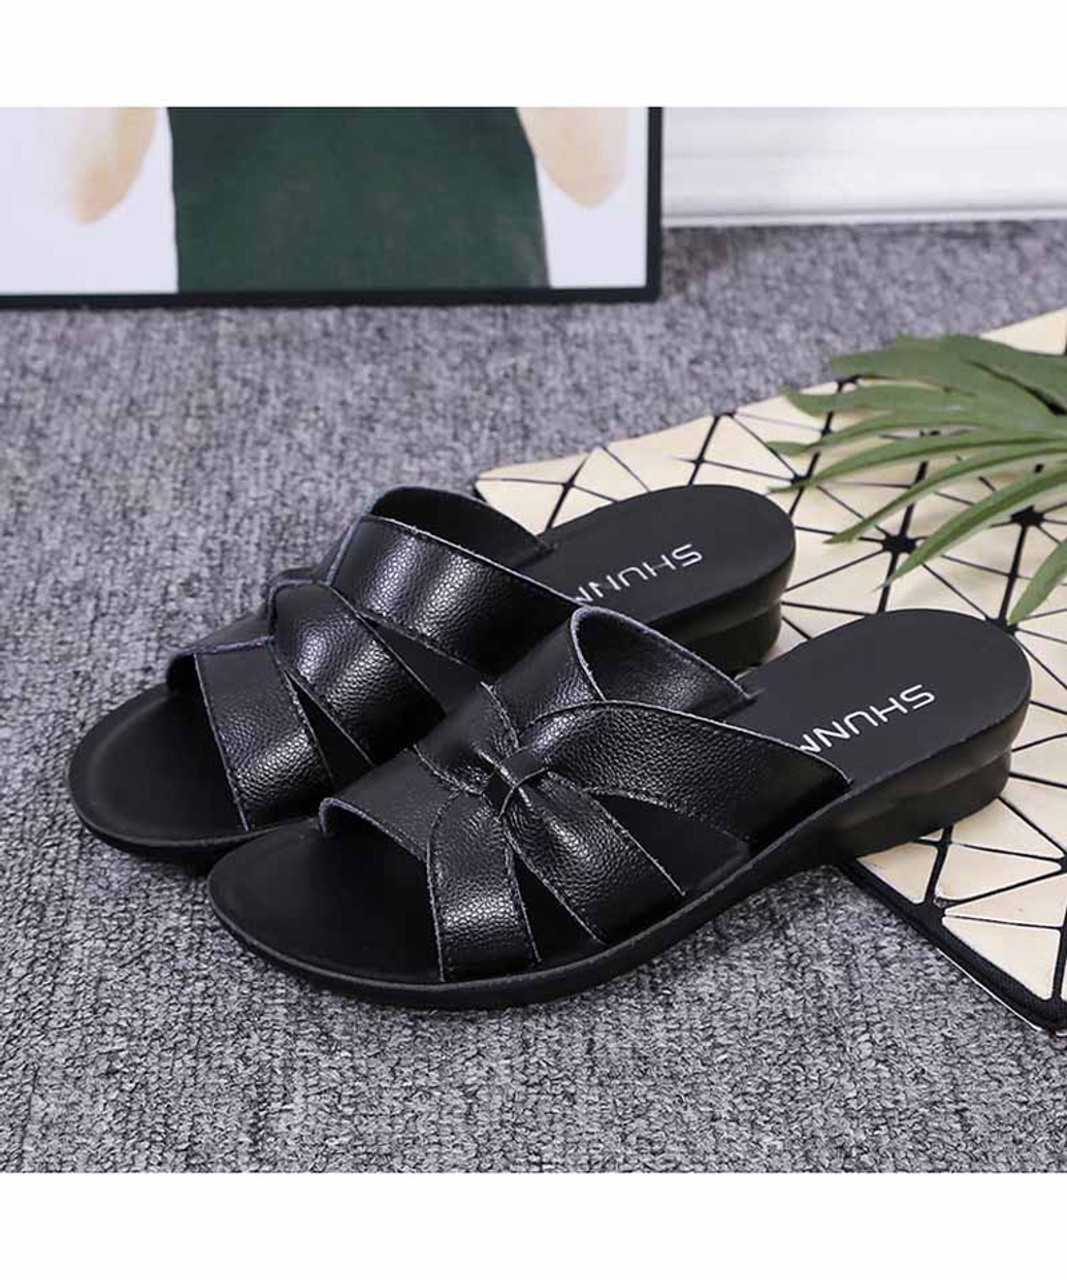 Black cross strap vamp slip on mule shoe sandal | Womens sandals online ...